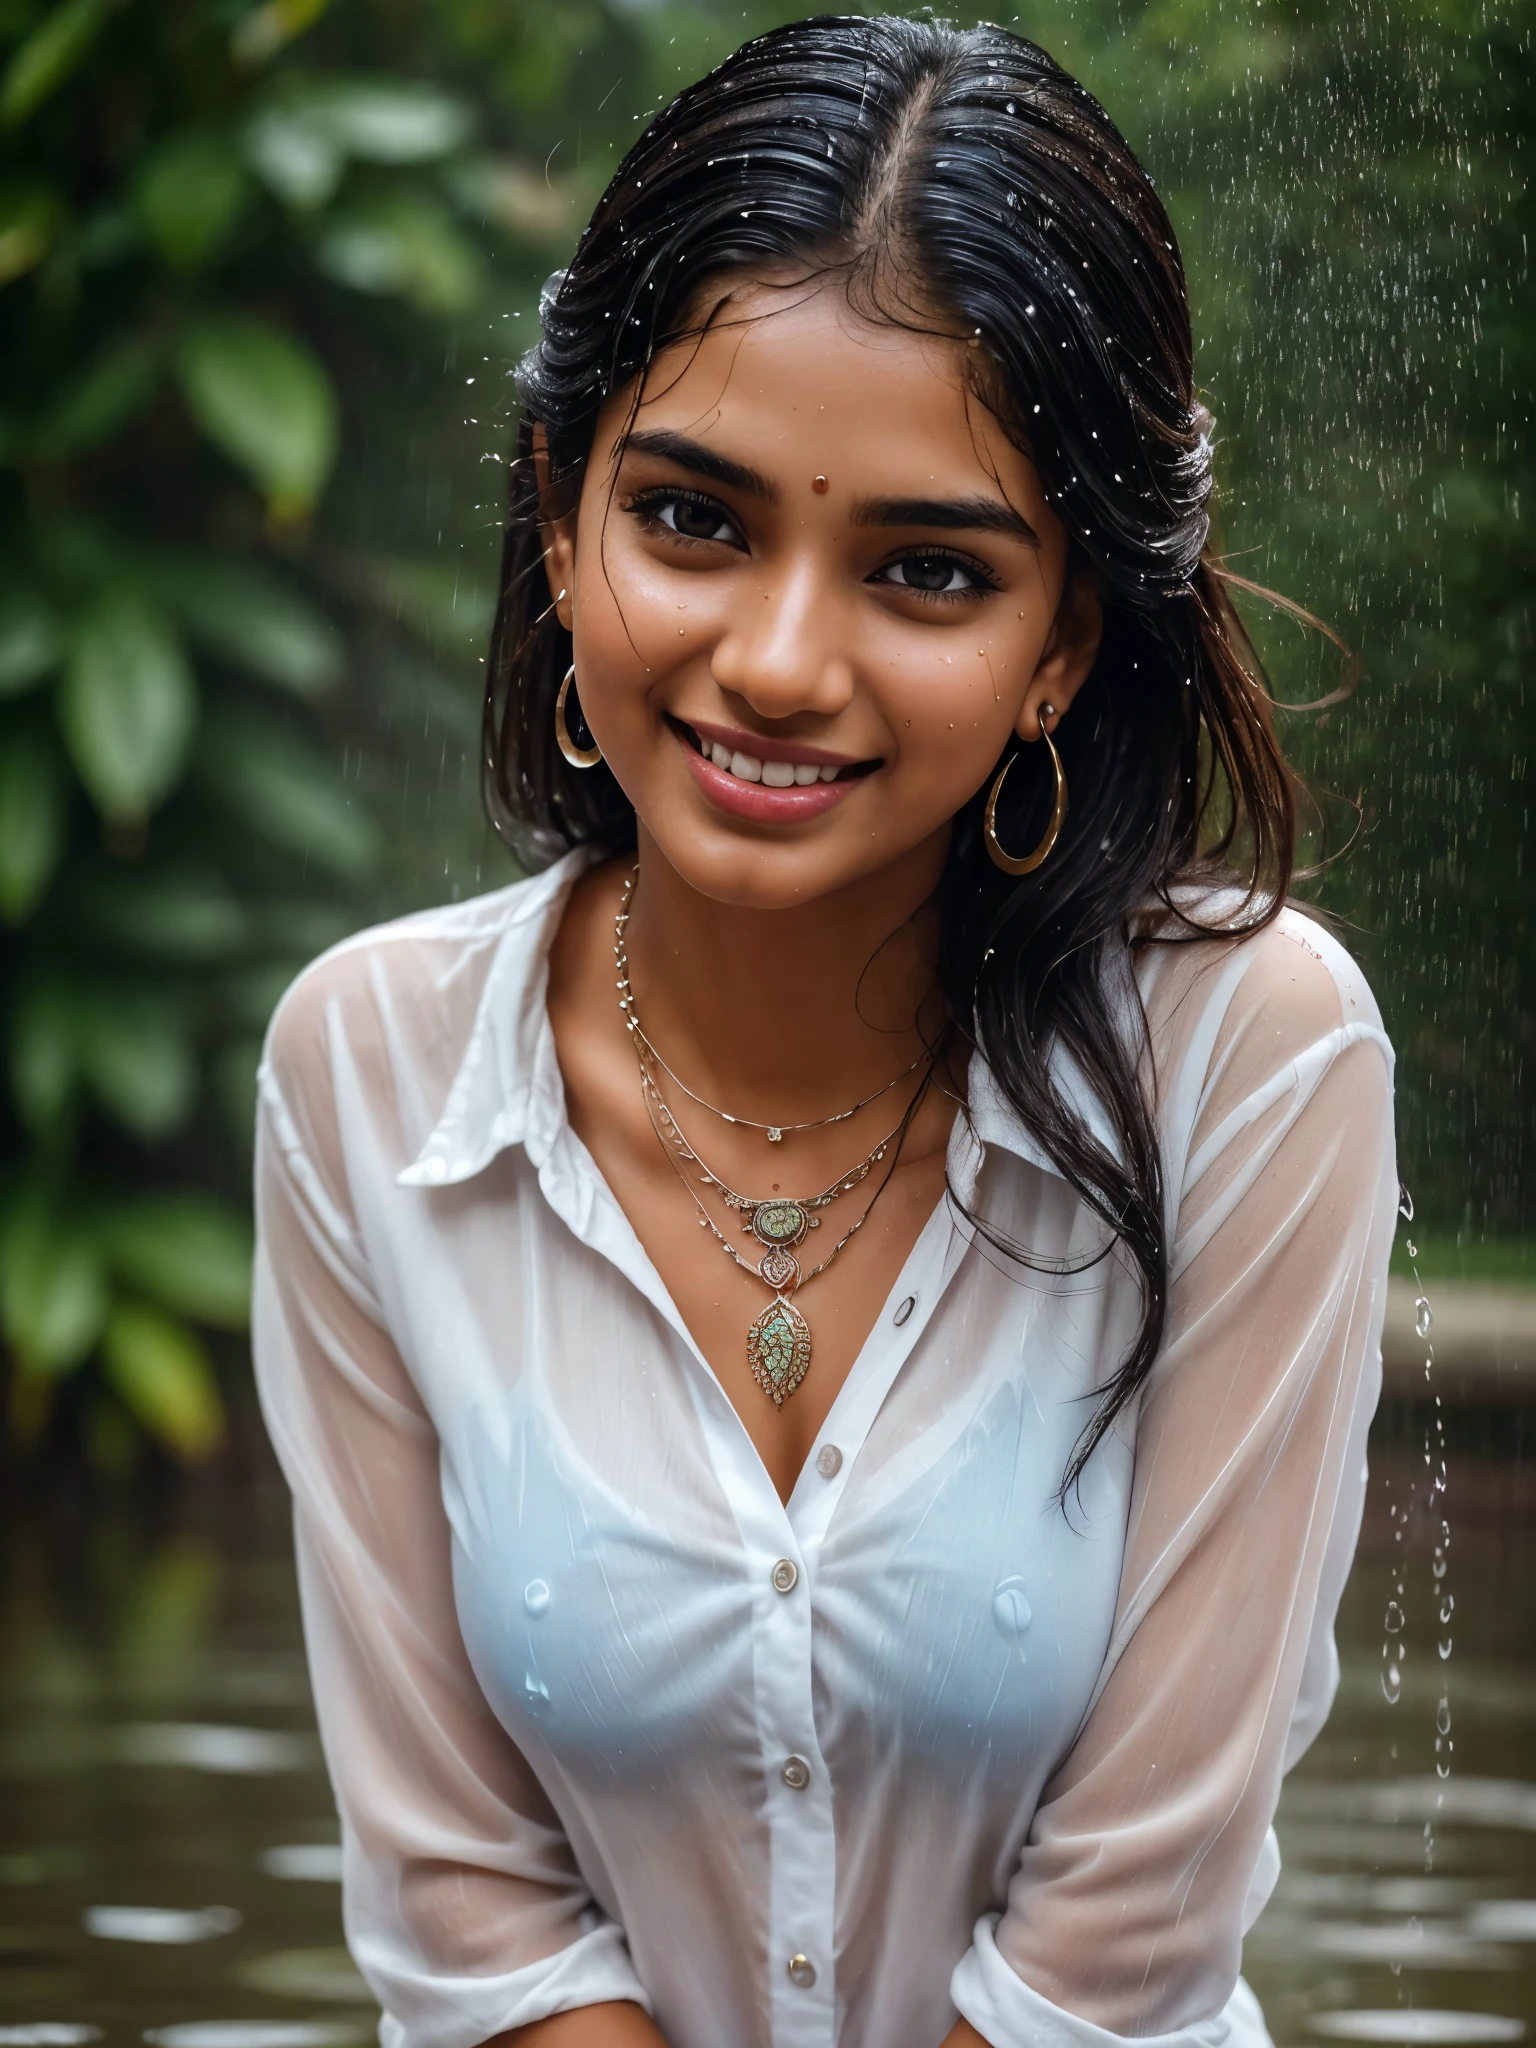 20 y耳朵 old extremely beautiful brown Tamil girl (白襯衫 藍色 牛仔褲), (手镯 耳环 项链 手表), 在雨中享受, 被雨淋濕, 面向觀眾 面向相機, 眼睛 symmetry, 臉部對稱, (最好的品質, 超詳細:1.6), 色彩繽紛的場景, 明亮的調色板, 俏皮的氣氛, 鮮豔的色彩, 可愛的表情, 歡樂的笑聲, 雨滴反射, 濕的頭髮, 濕衣服, 濕身, 身体反射光线, 背光, 清爽的氛圍, 笑脸, 濺水, 雨滴落在她周圍, 自然採光, 捕捉的坦誠瞬間, 活泼的心情, 站在遠處, (複雜的細節:1.6 个面 & 眼睛 & 耳朵 & 鼻子 & 嘴唇 & 皮膚 & 5個手指 & 曲線 & 身体部位)